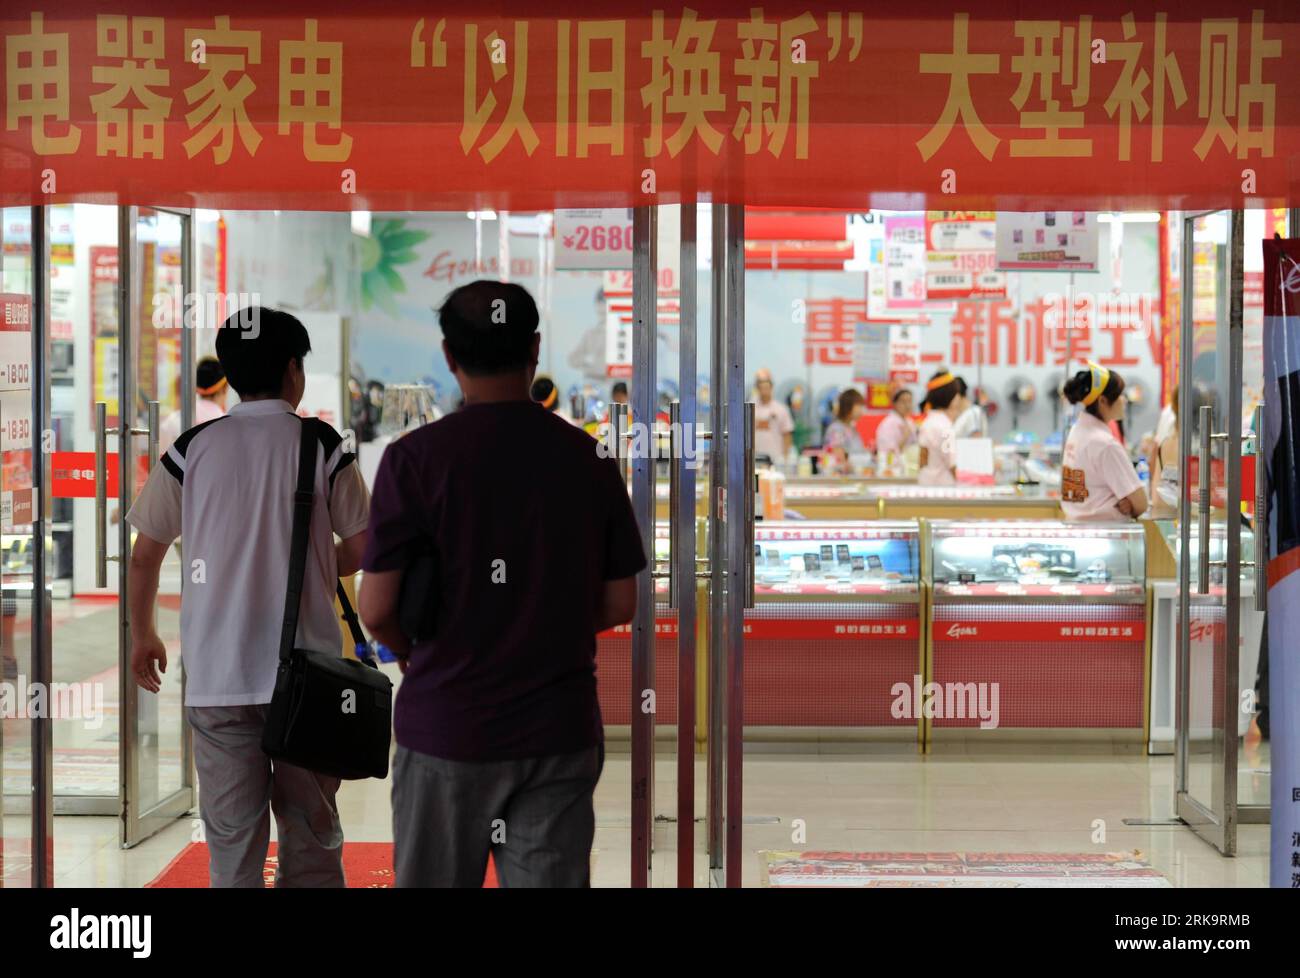 Bildnummer: 54227697 Datum: 14.07.2010 Copyright: imago/Xinhua i cittadini locali entrano in un negozio di elettrodomestici per conoscere il programma di sovvenzione per la sostituzione degli elettrodomestici a Shenyang, provincia di Liaoning della Cina nordorientale, 14 luglio 2010. Secondo la politica, il governo concederà una sovvenzione del 10% dei nuovi elettrodomestici a persone giuridiche registrate o residenti che acquistano nuovi elettrodomestici e, allo stesso tempo, restituiscono quelli usati per la sostituzione. (Xinhua/Zheng lei) (px) (3)CHINA-LIAONING-REPLACEMENT-HOUSEHOLD ELECTRICAL APPLIANCES-PRO Foto Stock